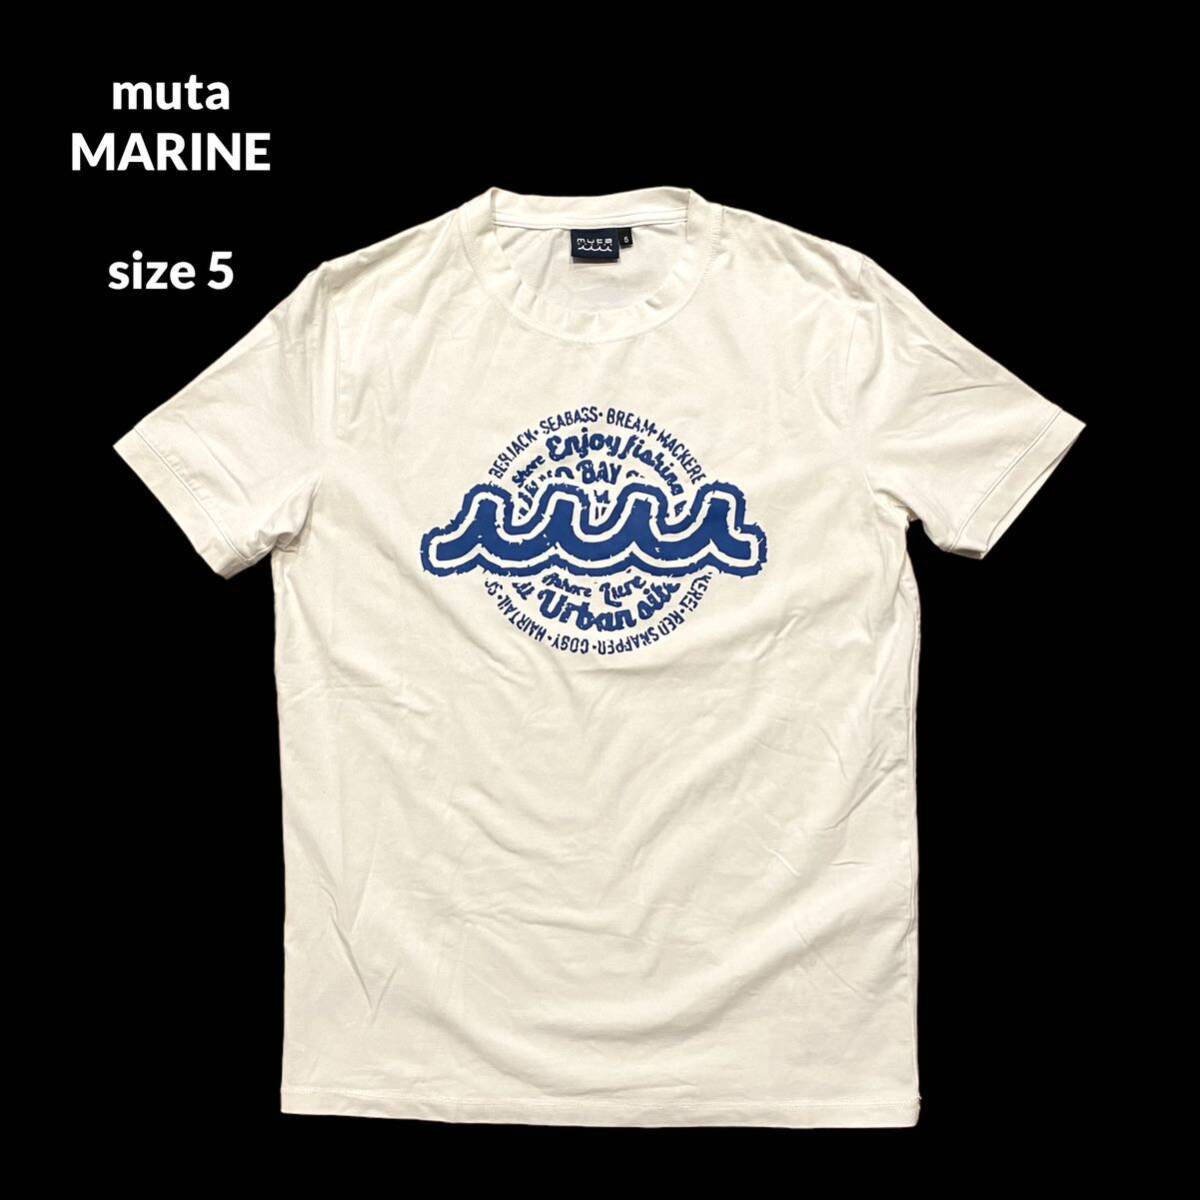 muta MARINE FISHING 半袖 クルーネック Tシャツ Tee トップス ムータ マリン フィッシング 白 ホワイト プリント ストレッチ サイズ 5_画像1